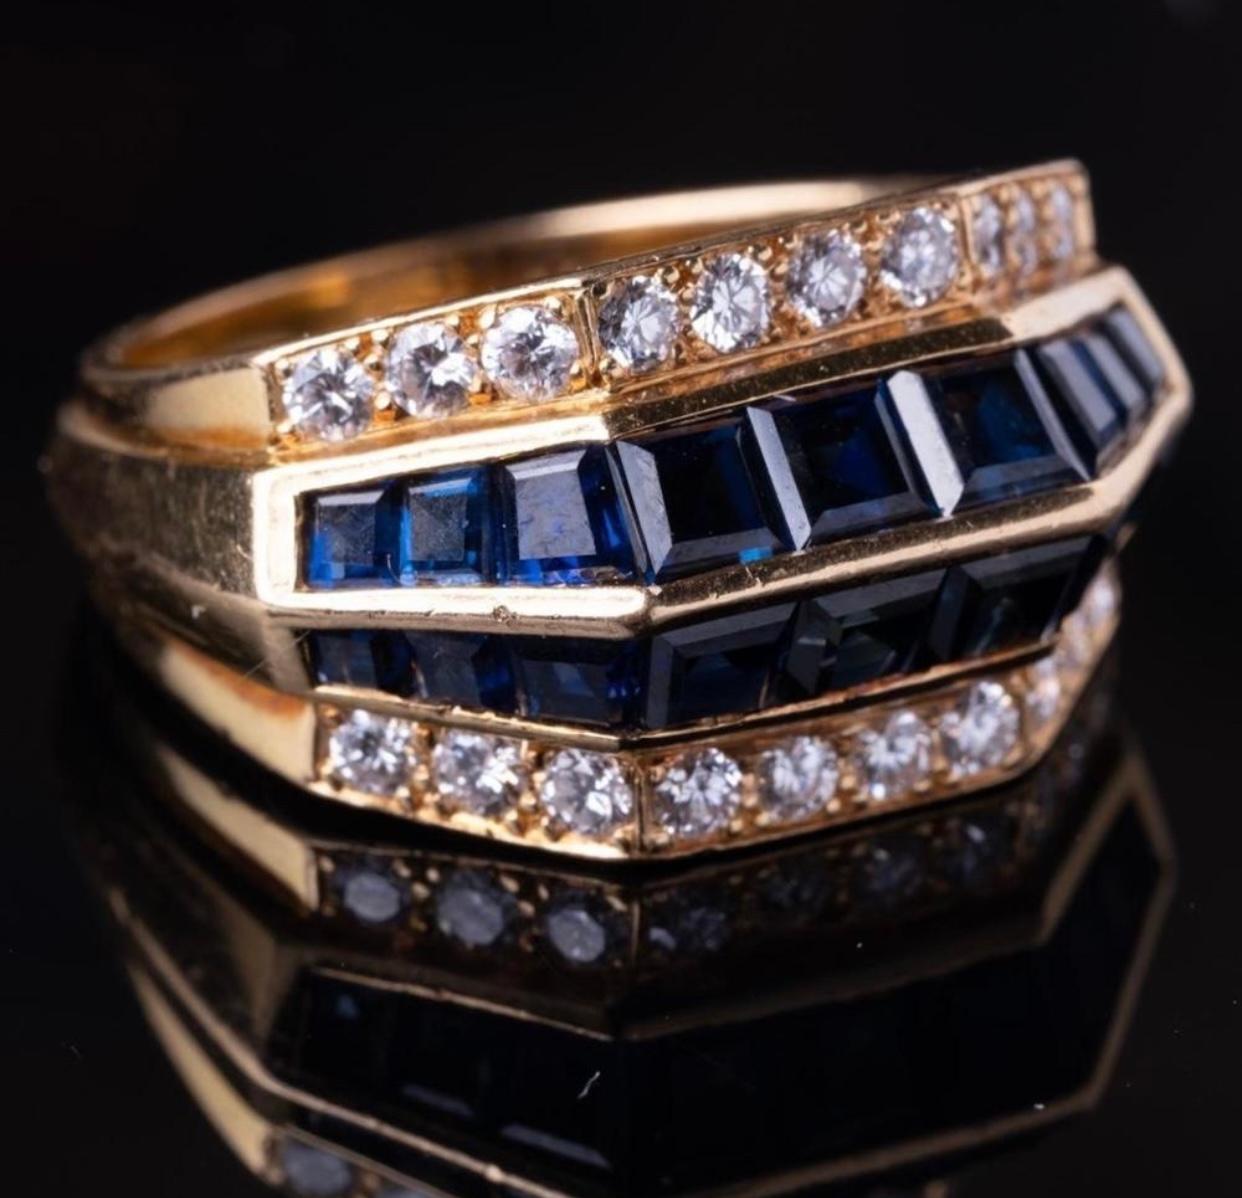 Oscar Heyman 2,55 Karat t.w. blauer Saphir und Diamantring in 18k Gelbgold signiert mit Seriennummer.  

Fesselnder Ring in klarem und modernem Design von den renommierten Oscar Heyman Brothers mit 1,8 Karat Gesamtgewicht an blauen Saphiren, die in